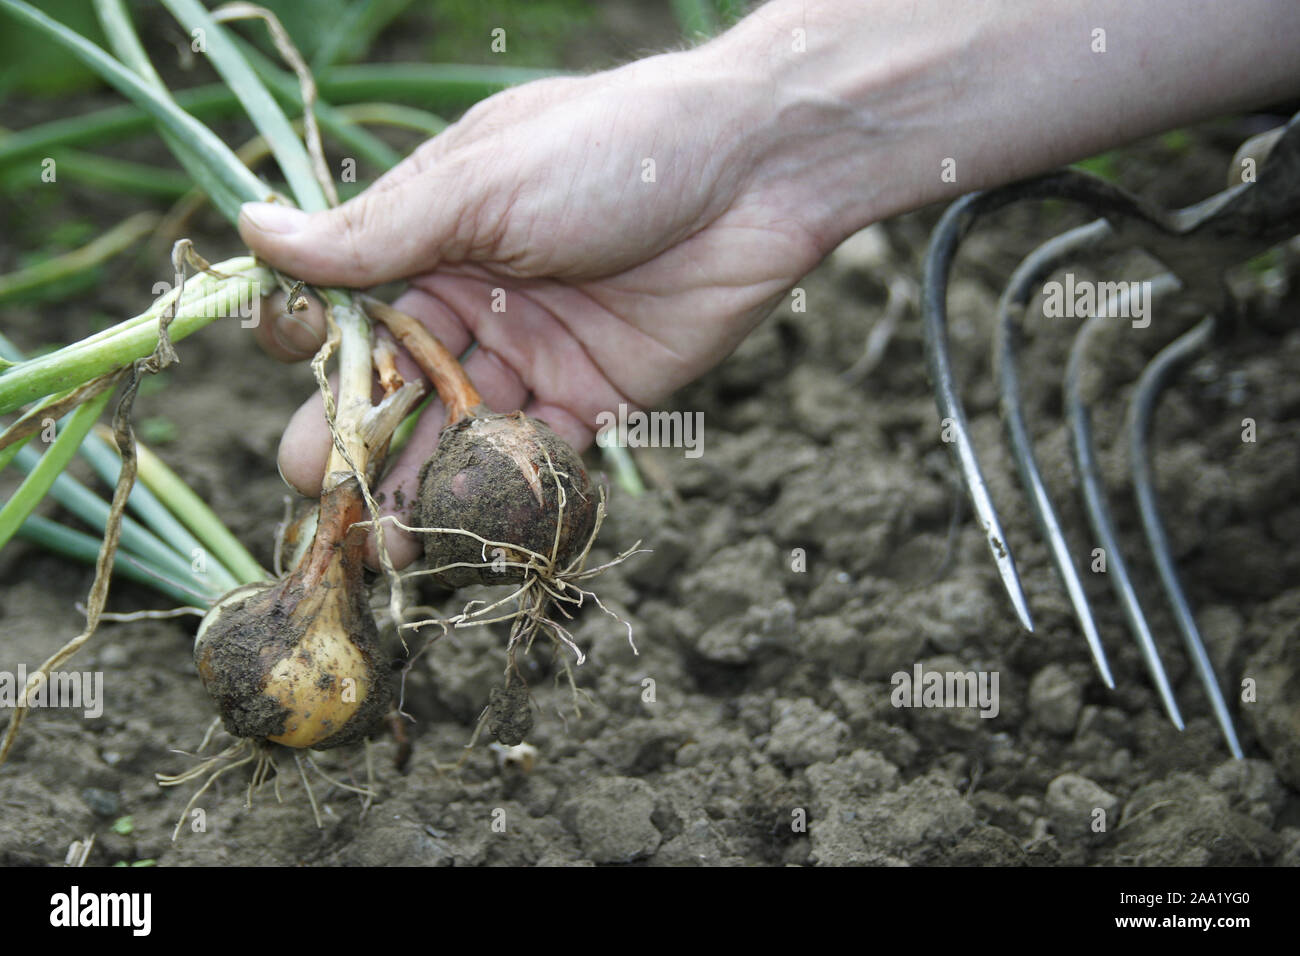 Zwiebelernte in einem Beet, Hand hält eine Zwiebel / Harvest in a onion-bed, hand is holding a onion Stock Photo